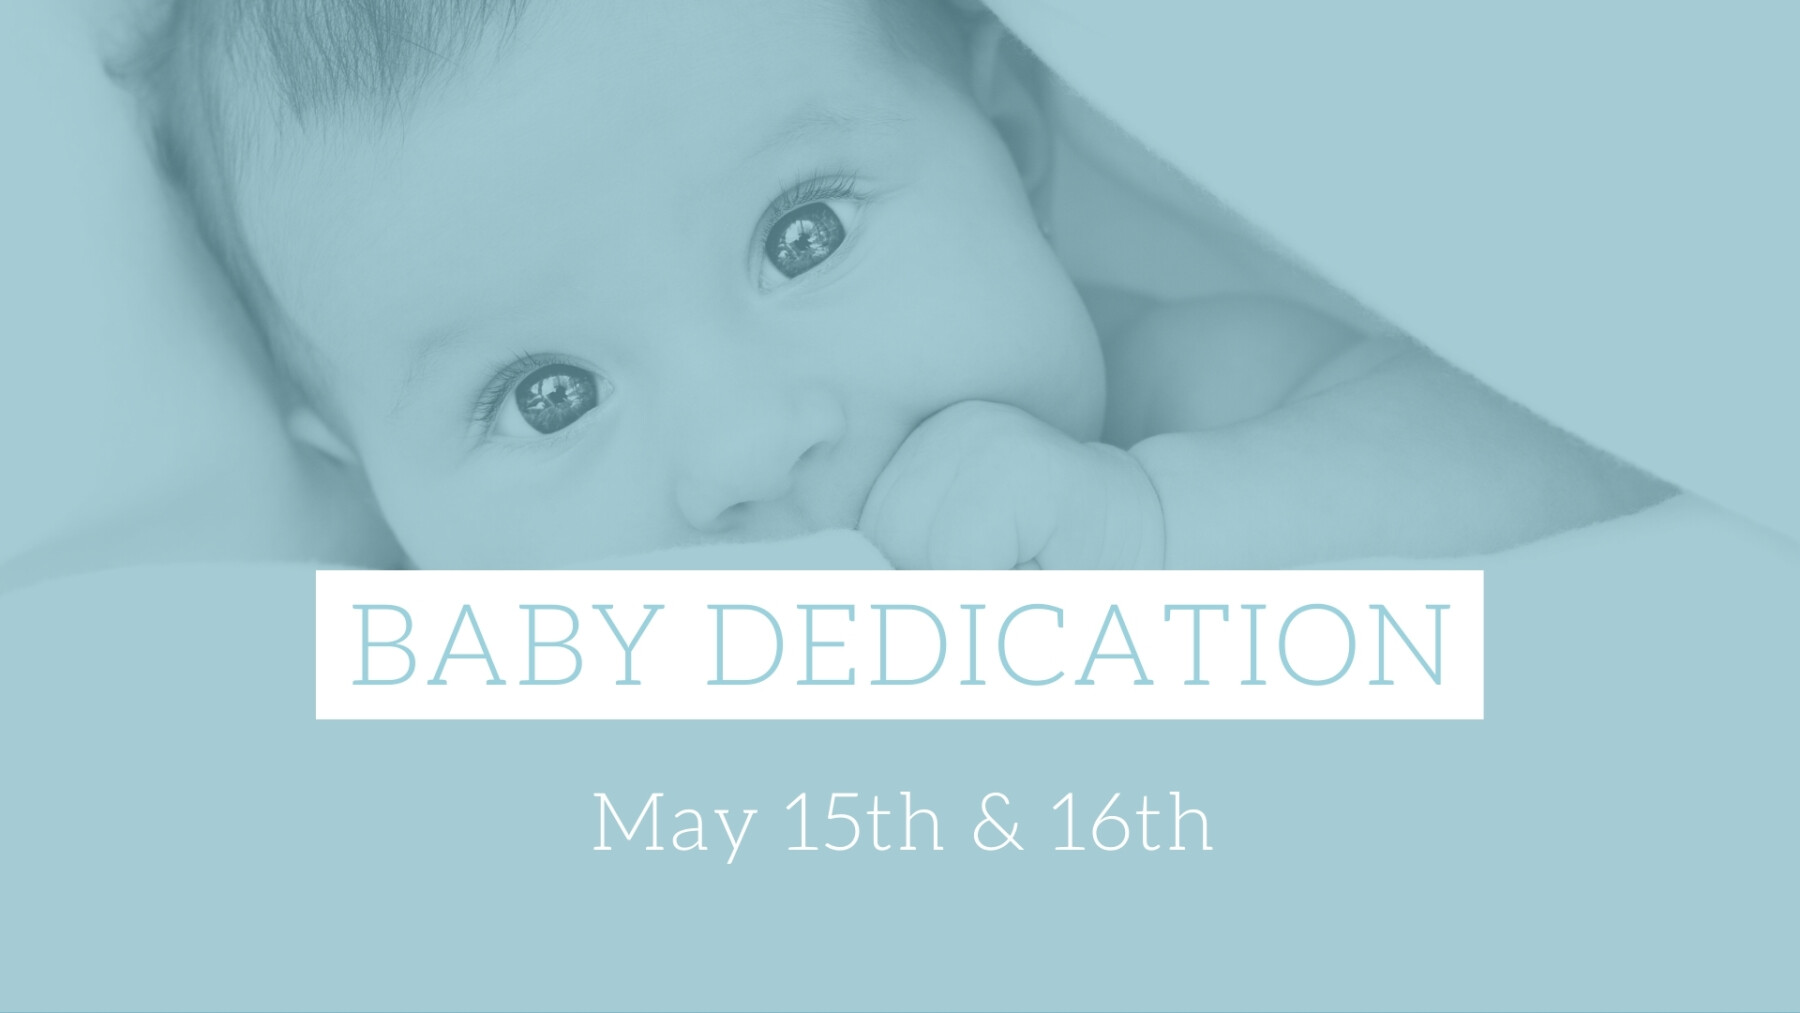 Baby Dedication - Saturday, May 15th & Sunday, May 16th